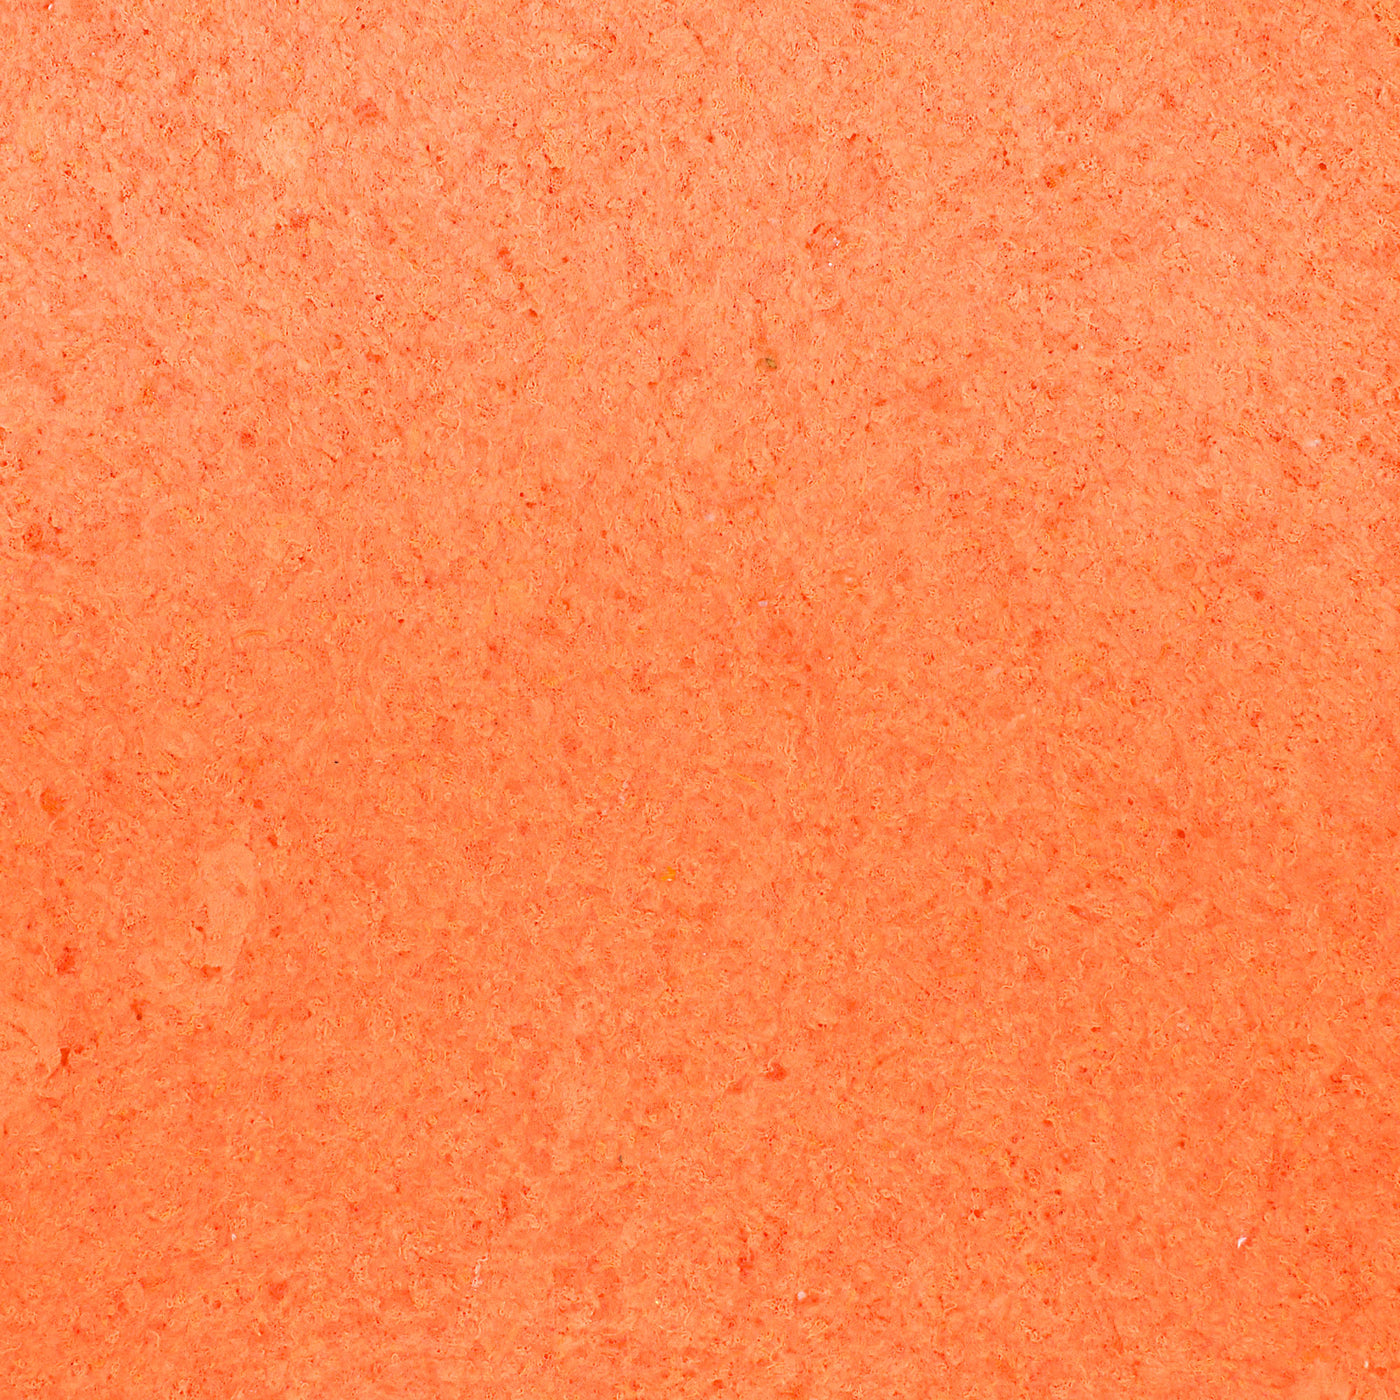 Cotton plaster color decor light orange